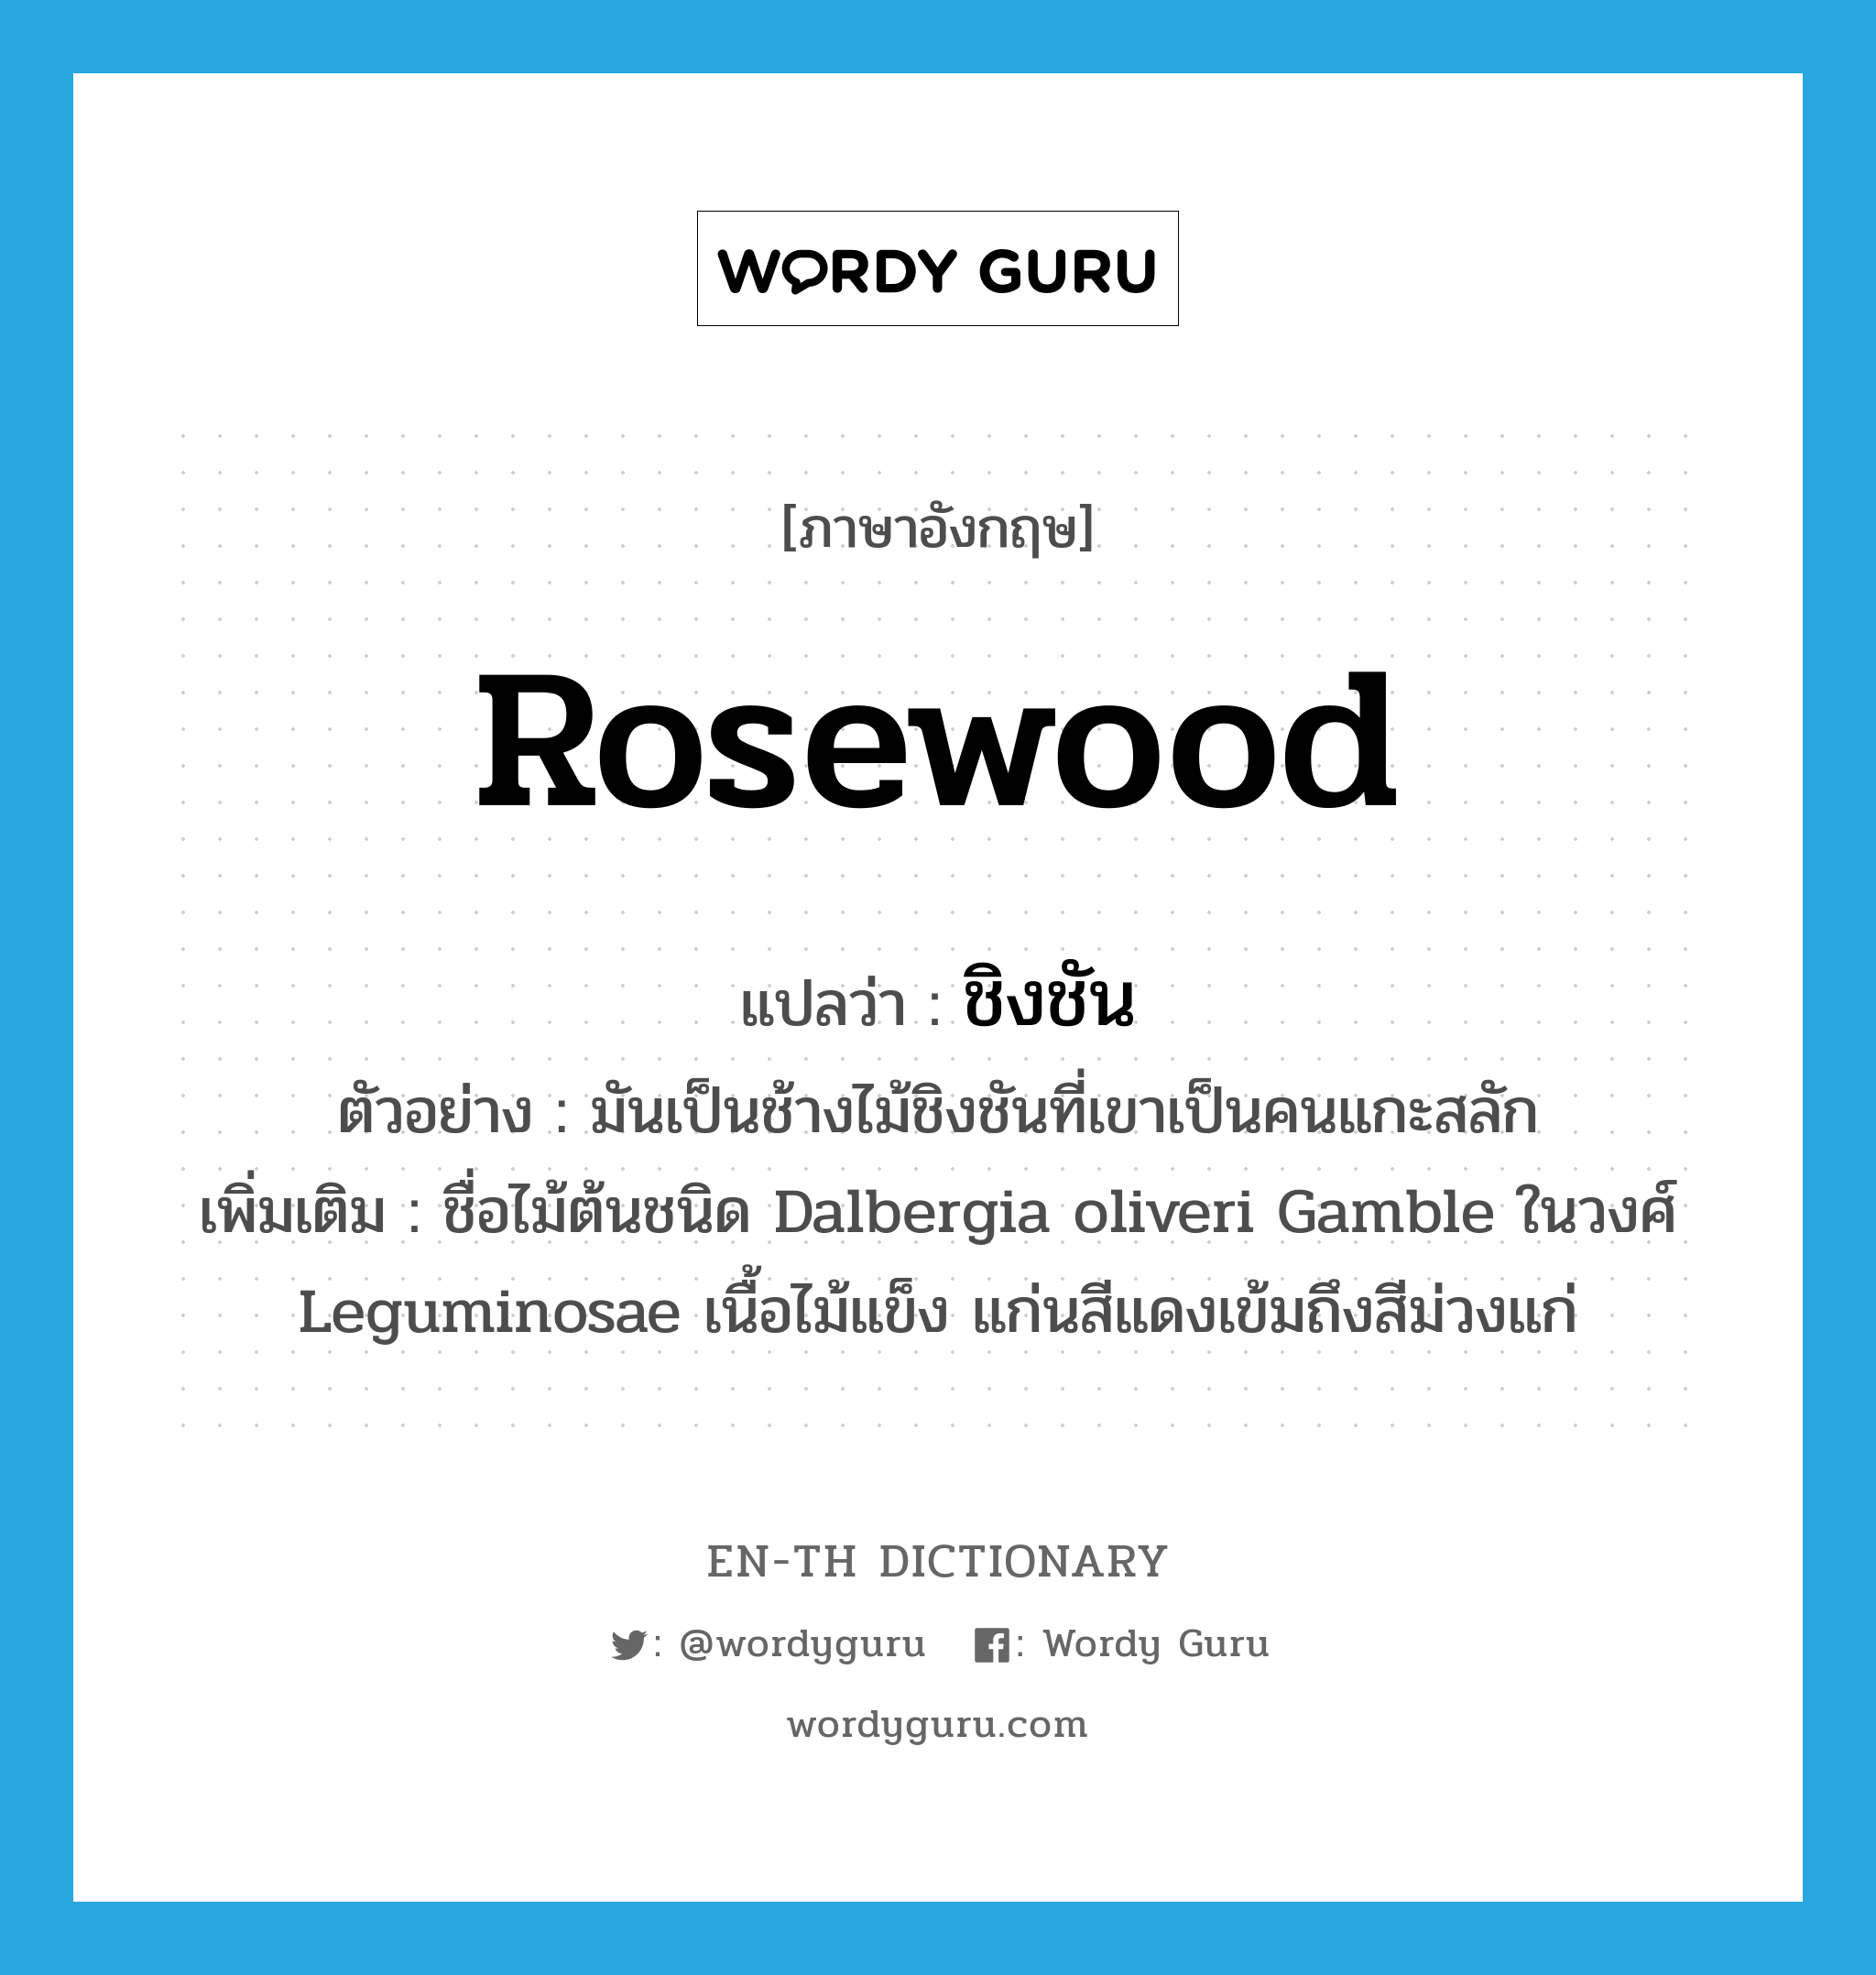 rosewood แปลว่า?, คำศัพท์ภาษาอังกฤษ rosewood แปลว่า ชิงชัน ประเภท N ตัวอย่าง มันเป็นช้างไม้ชิงชันที่เขาเป็นคนแกะสลัก เพิ่มเติม ชื่อไม้ต้นชนิด Dalbergia oliveri Gamble ในวงศ์ Leguminosae เนื้อไม้แข็ง แก่นสีแดงเข้มถึงสีม่วงแก่ หมวด N